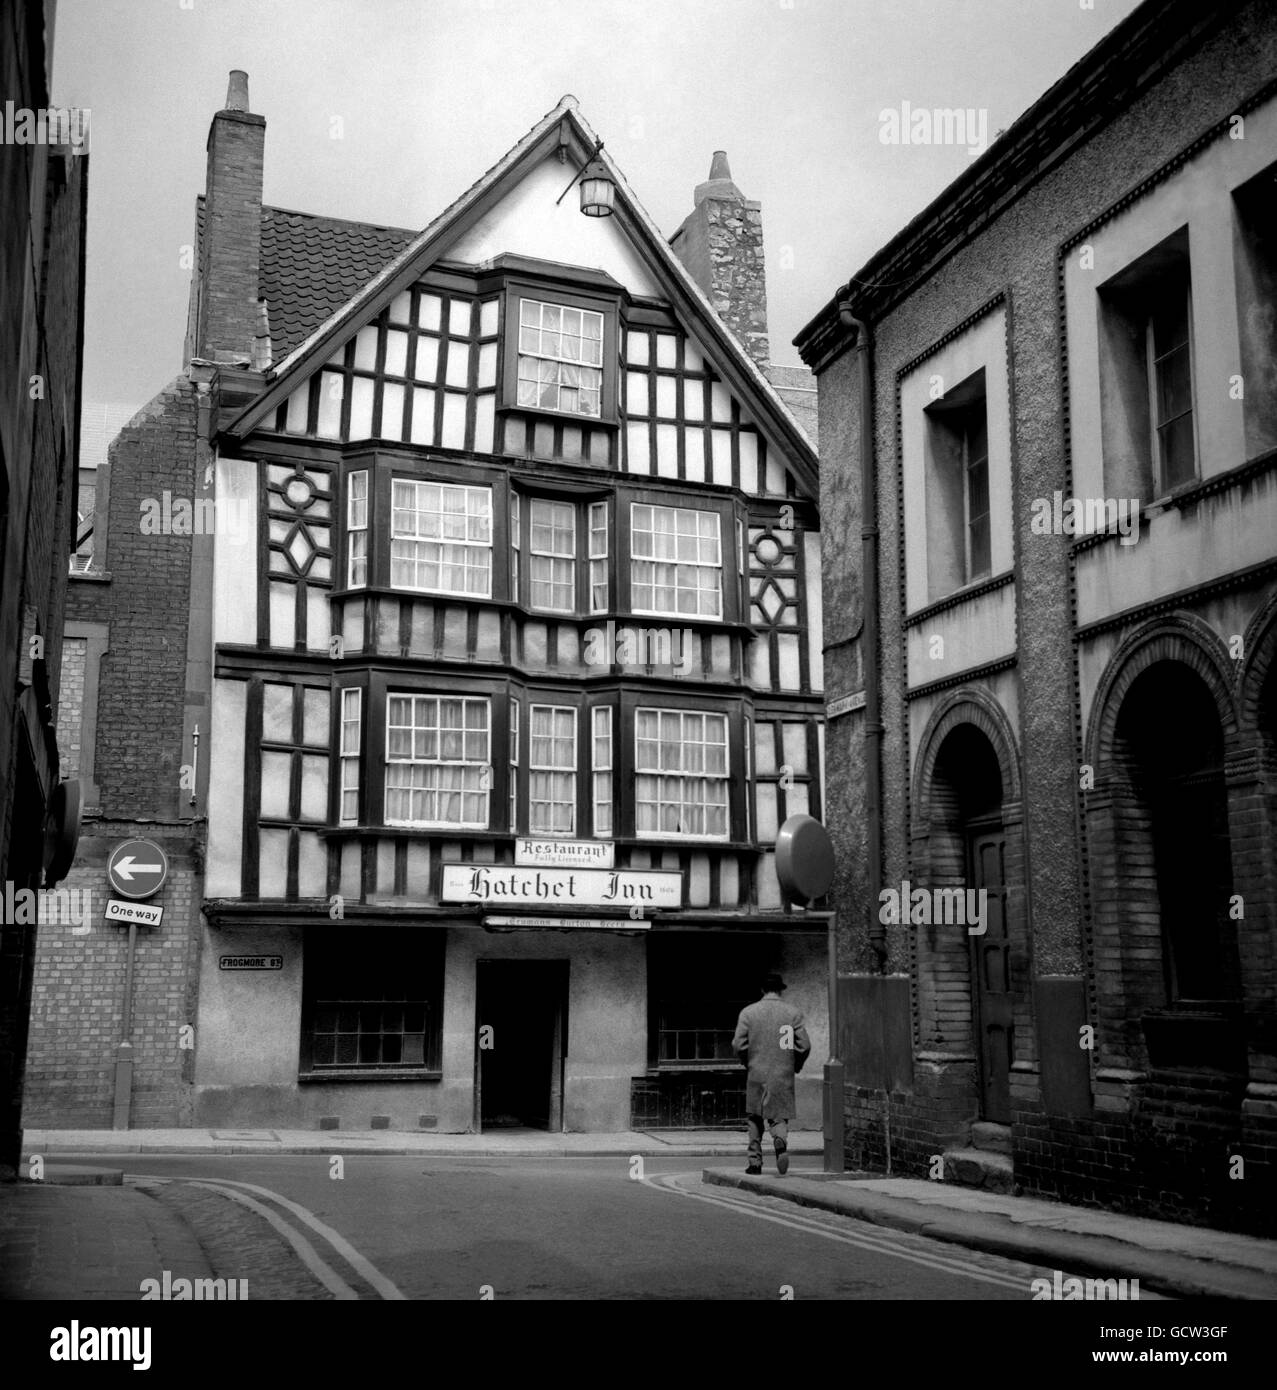 Aus struktureller Sicht ist das „Hatchet“ das älteste Gasthaus in Bristol. Lange vor dem Jahr 1606, als das Gebäude zum Gasthaus wurde, stand die Hatchet als Frogmore Farm und gab der Straße, auf der sie steht, ihren Namen. Stockfoto